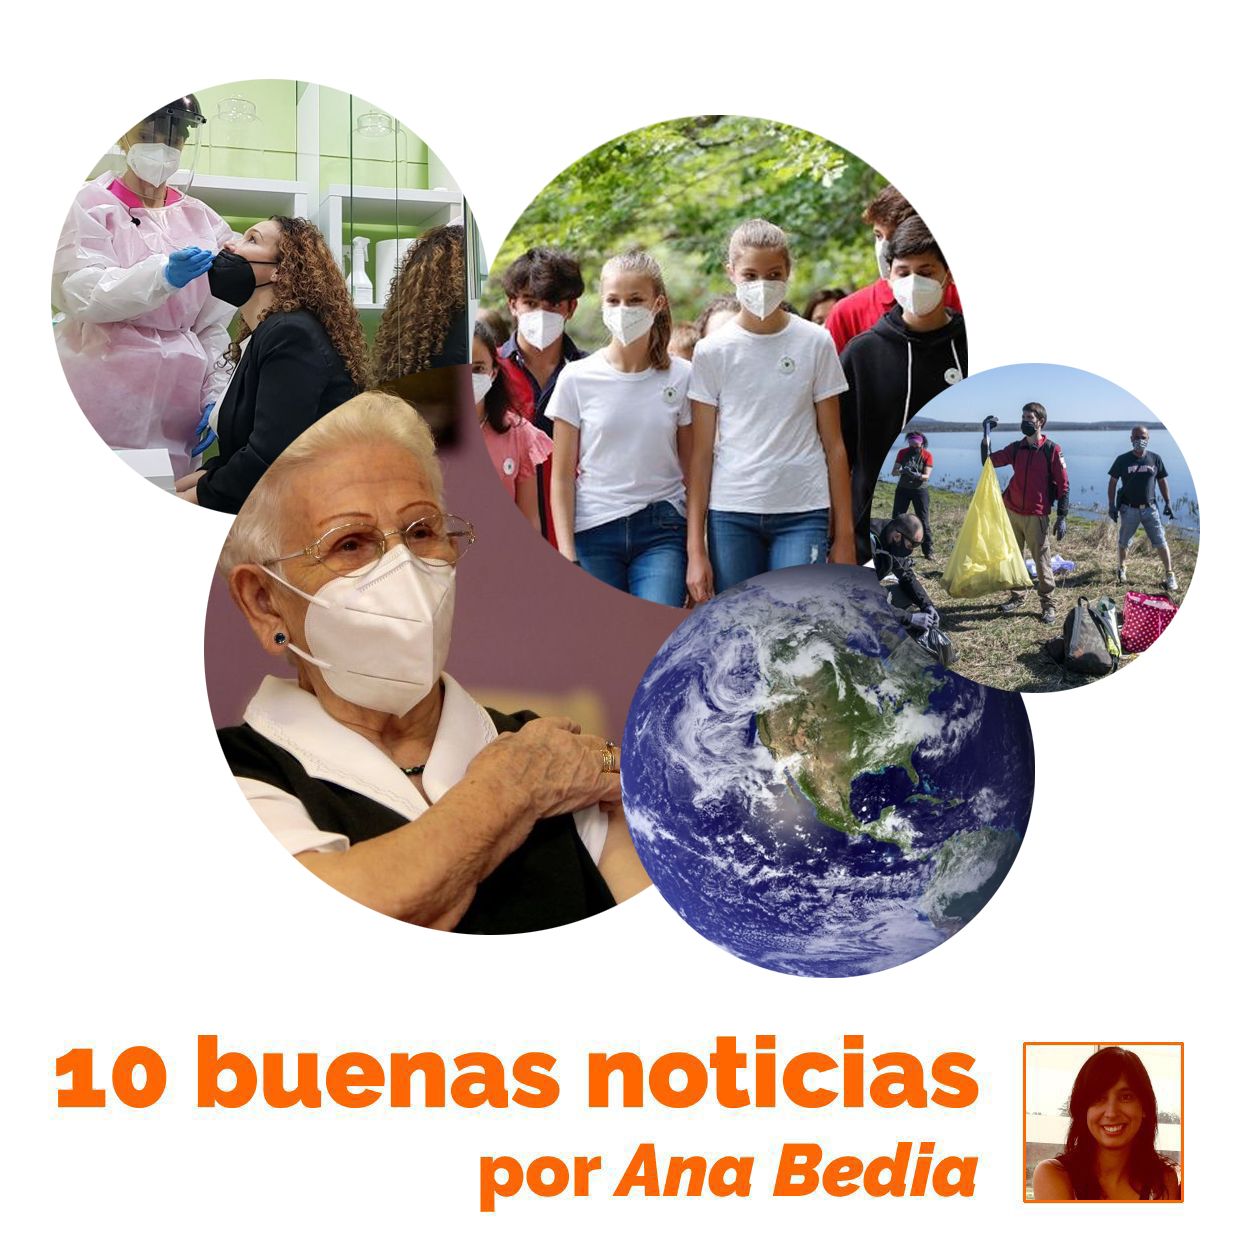 Las 10 buenas noticias de hoy 15 de julio: Araceli toma la palabra